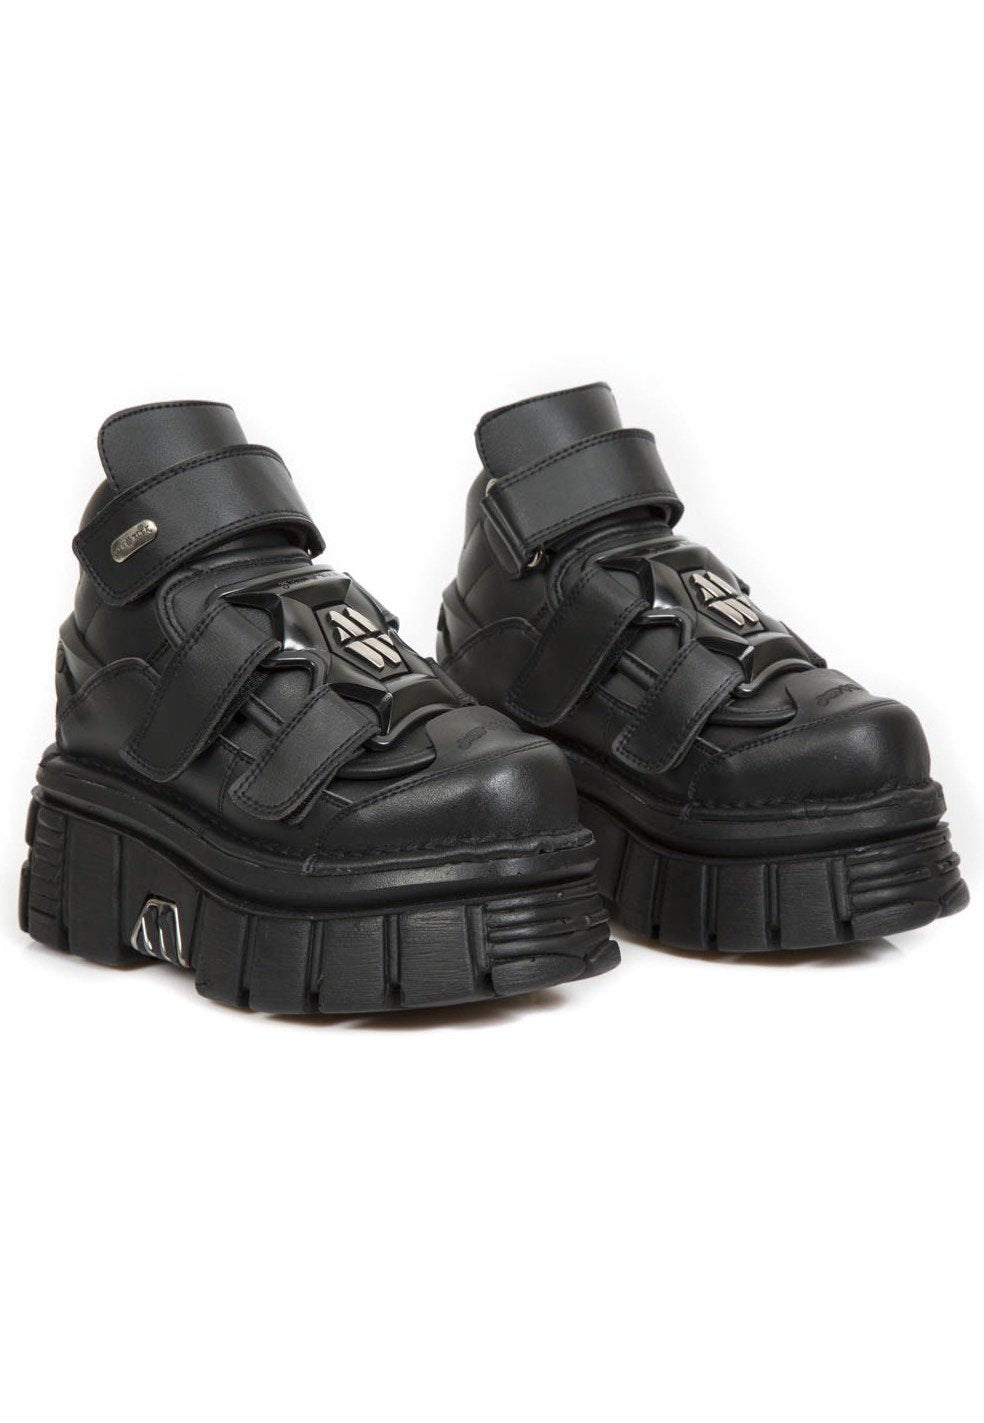 New Rock - 285 V3 Black - Girl Shoes